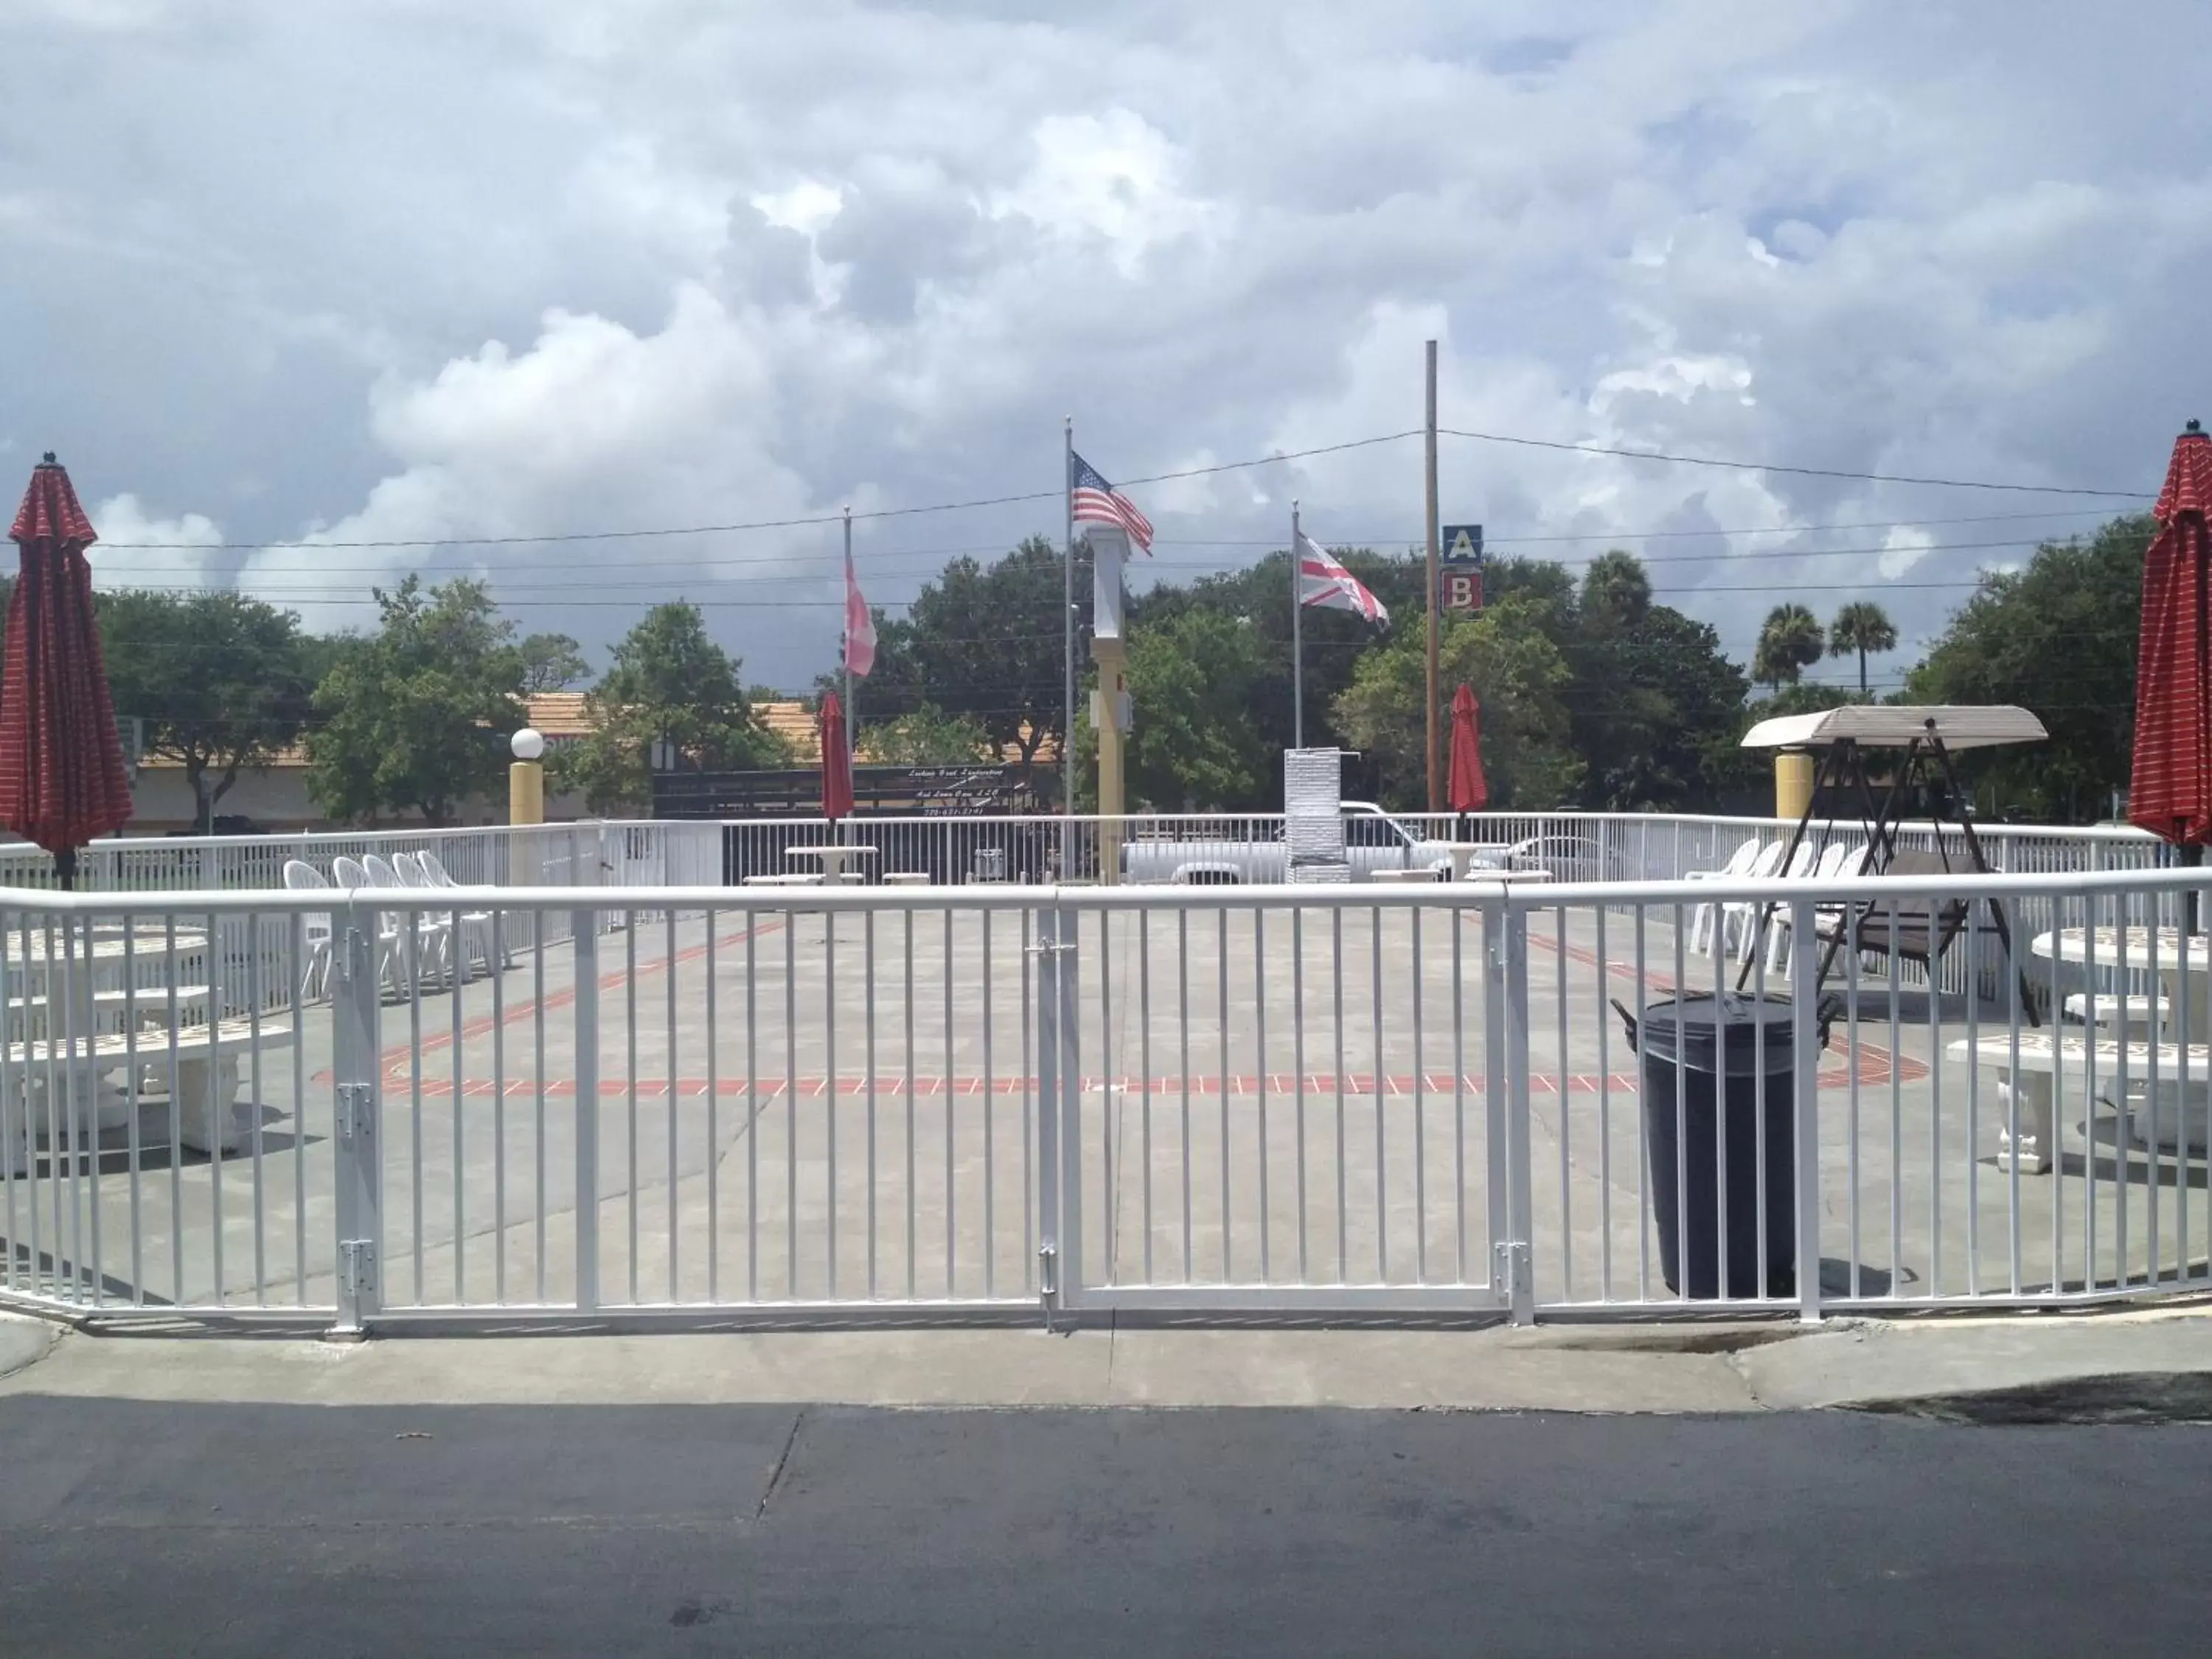 Facade/entrance in Super Inn Daytona Beach